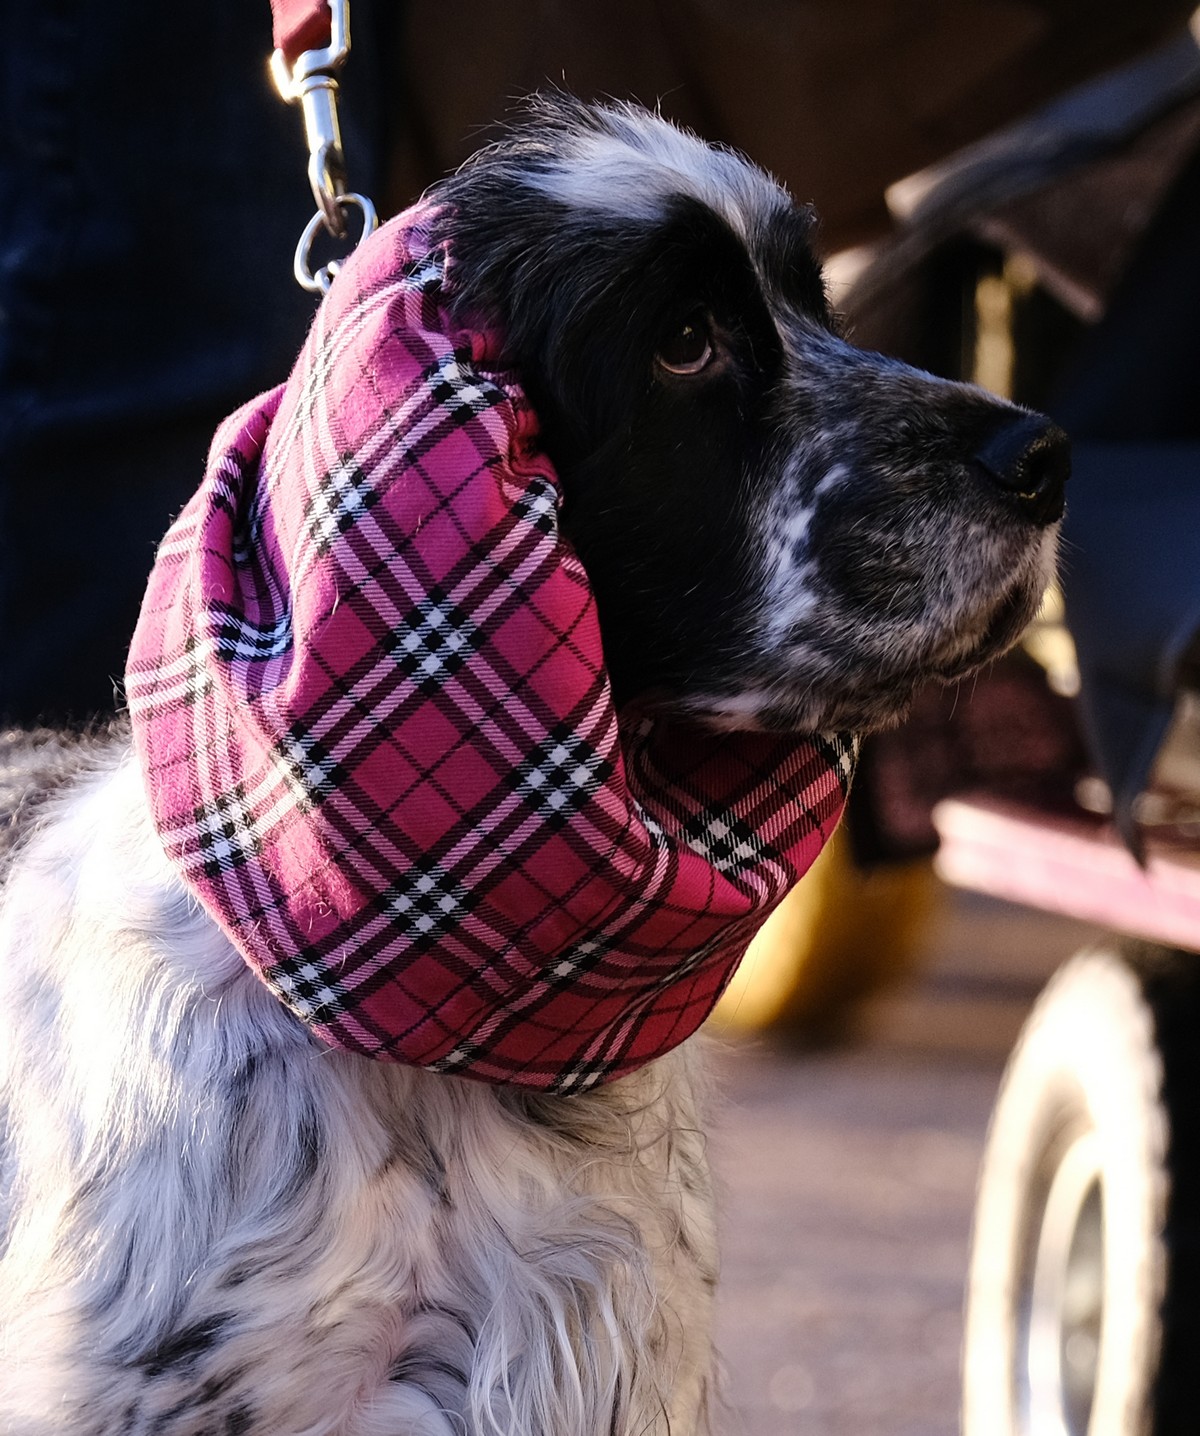 Выставка собак Crufts Dog Show 2019 проходит в Великобритании